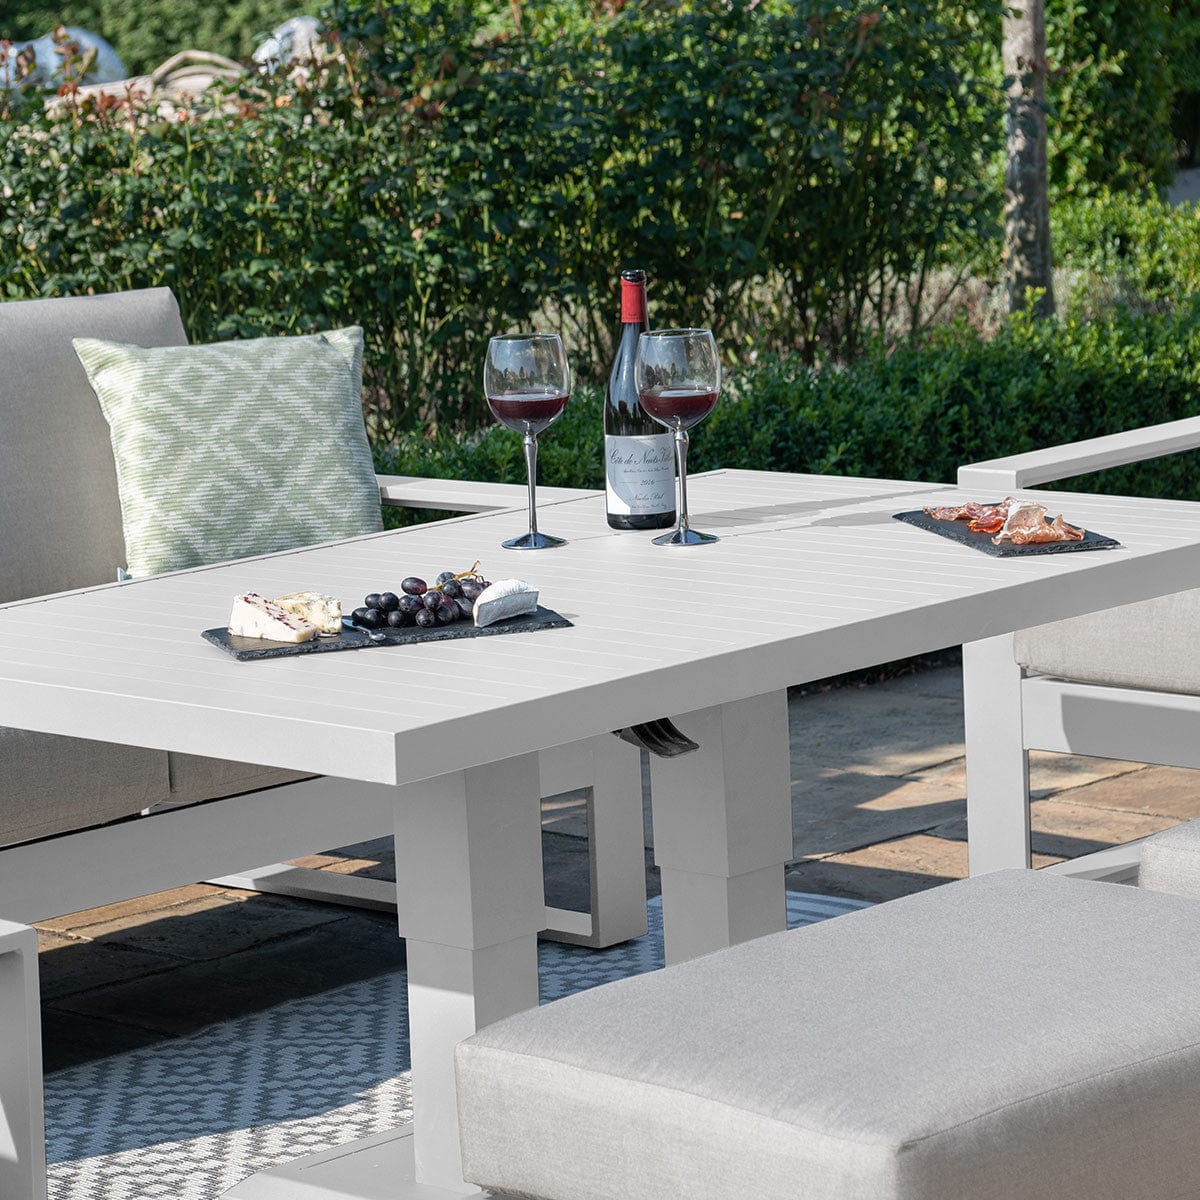 Maze Outdoors Amalfi 3 Seat Sofa Set With Rising Table / White House of Isabella UK